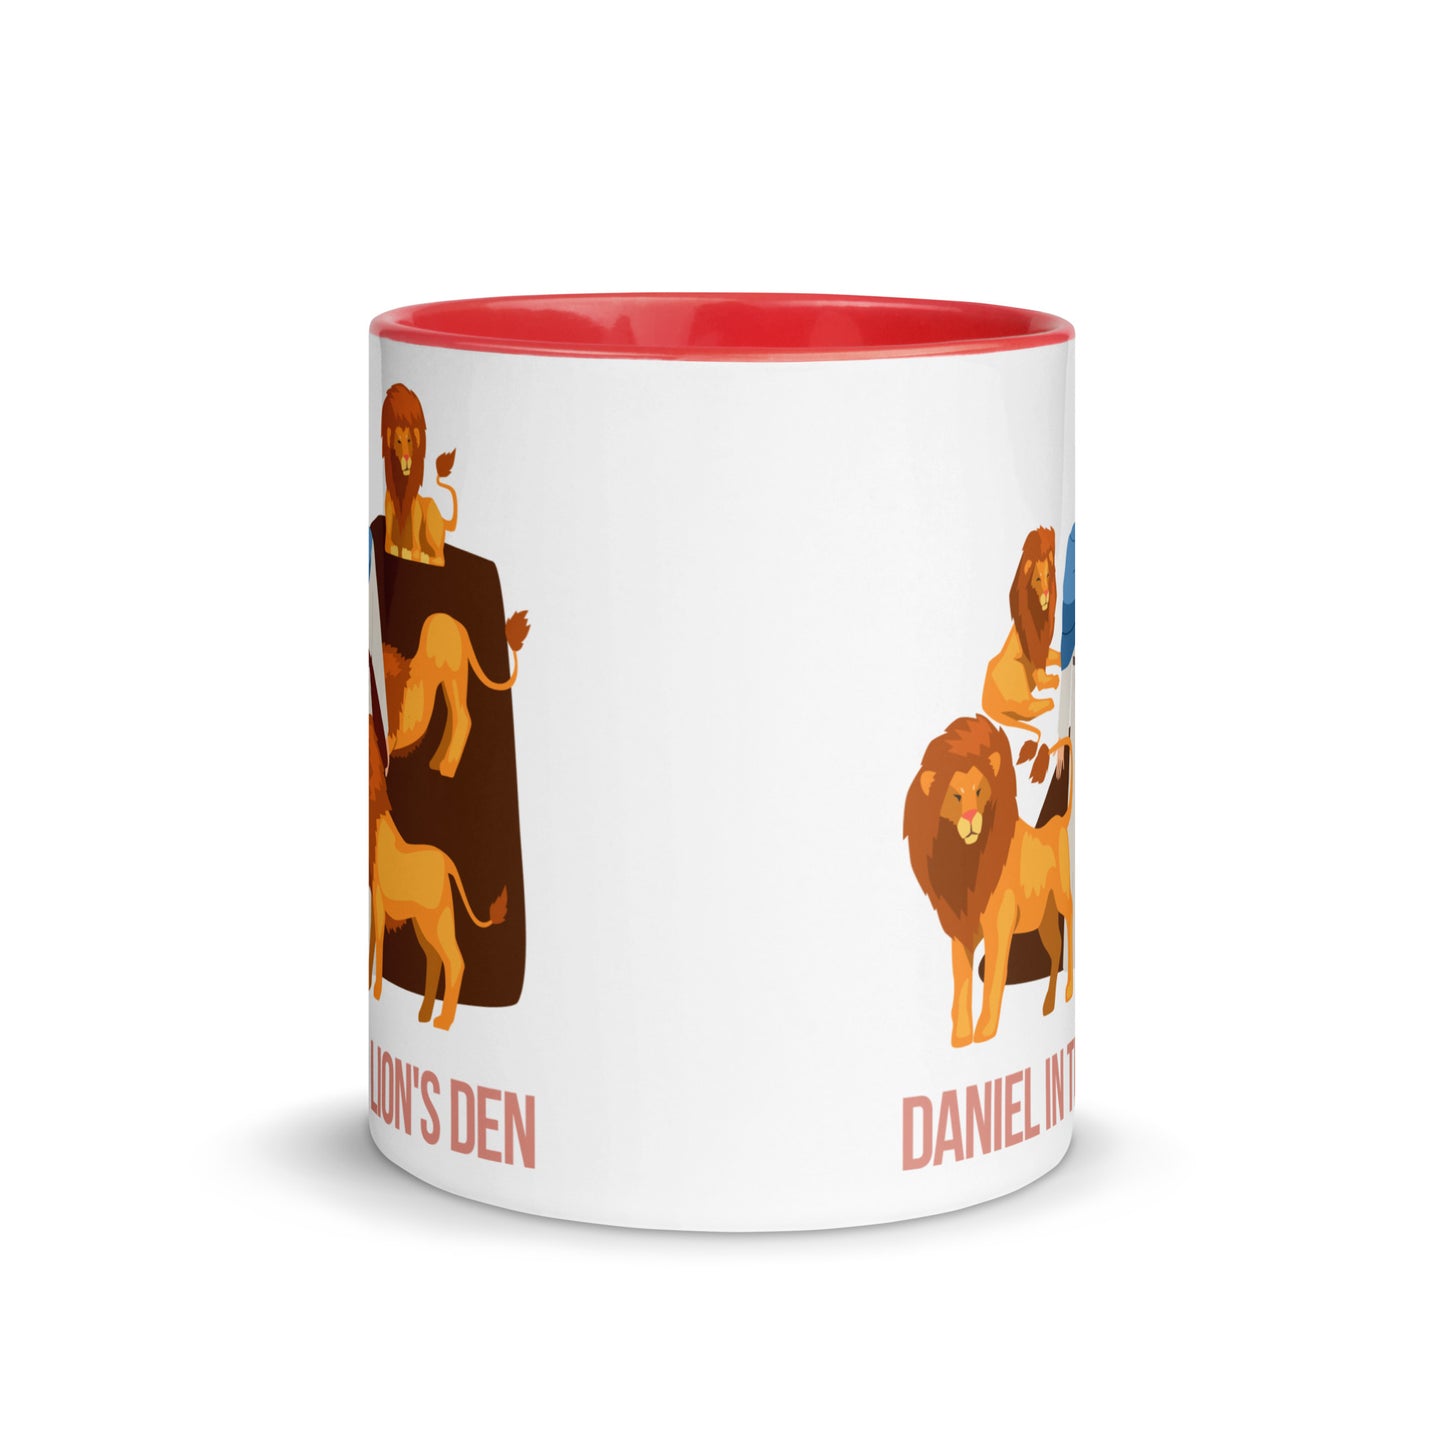 Daniel in the Lion's Den Mug with Color Inside